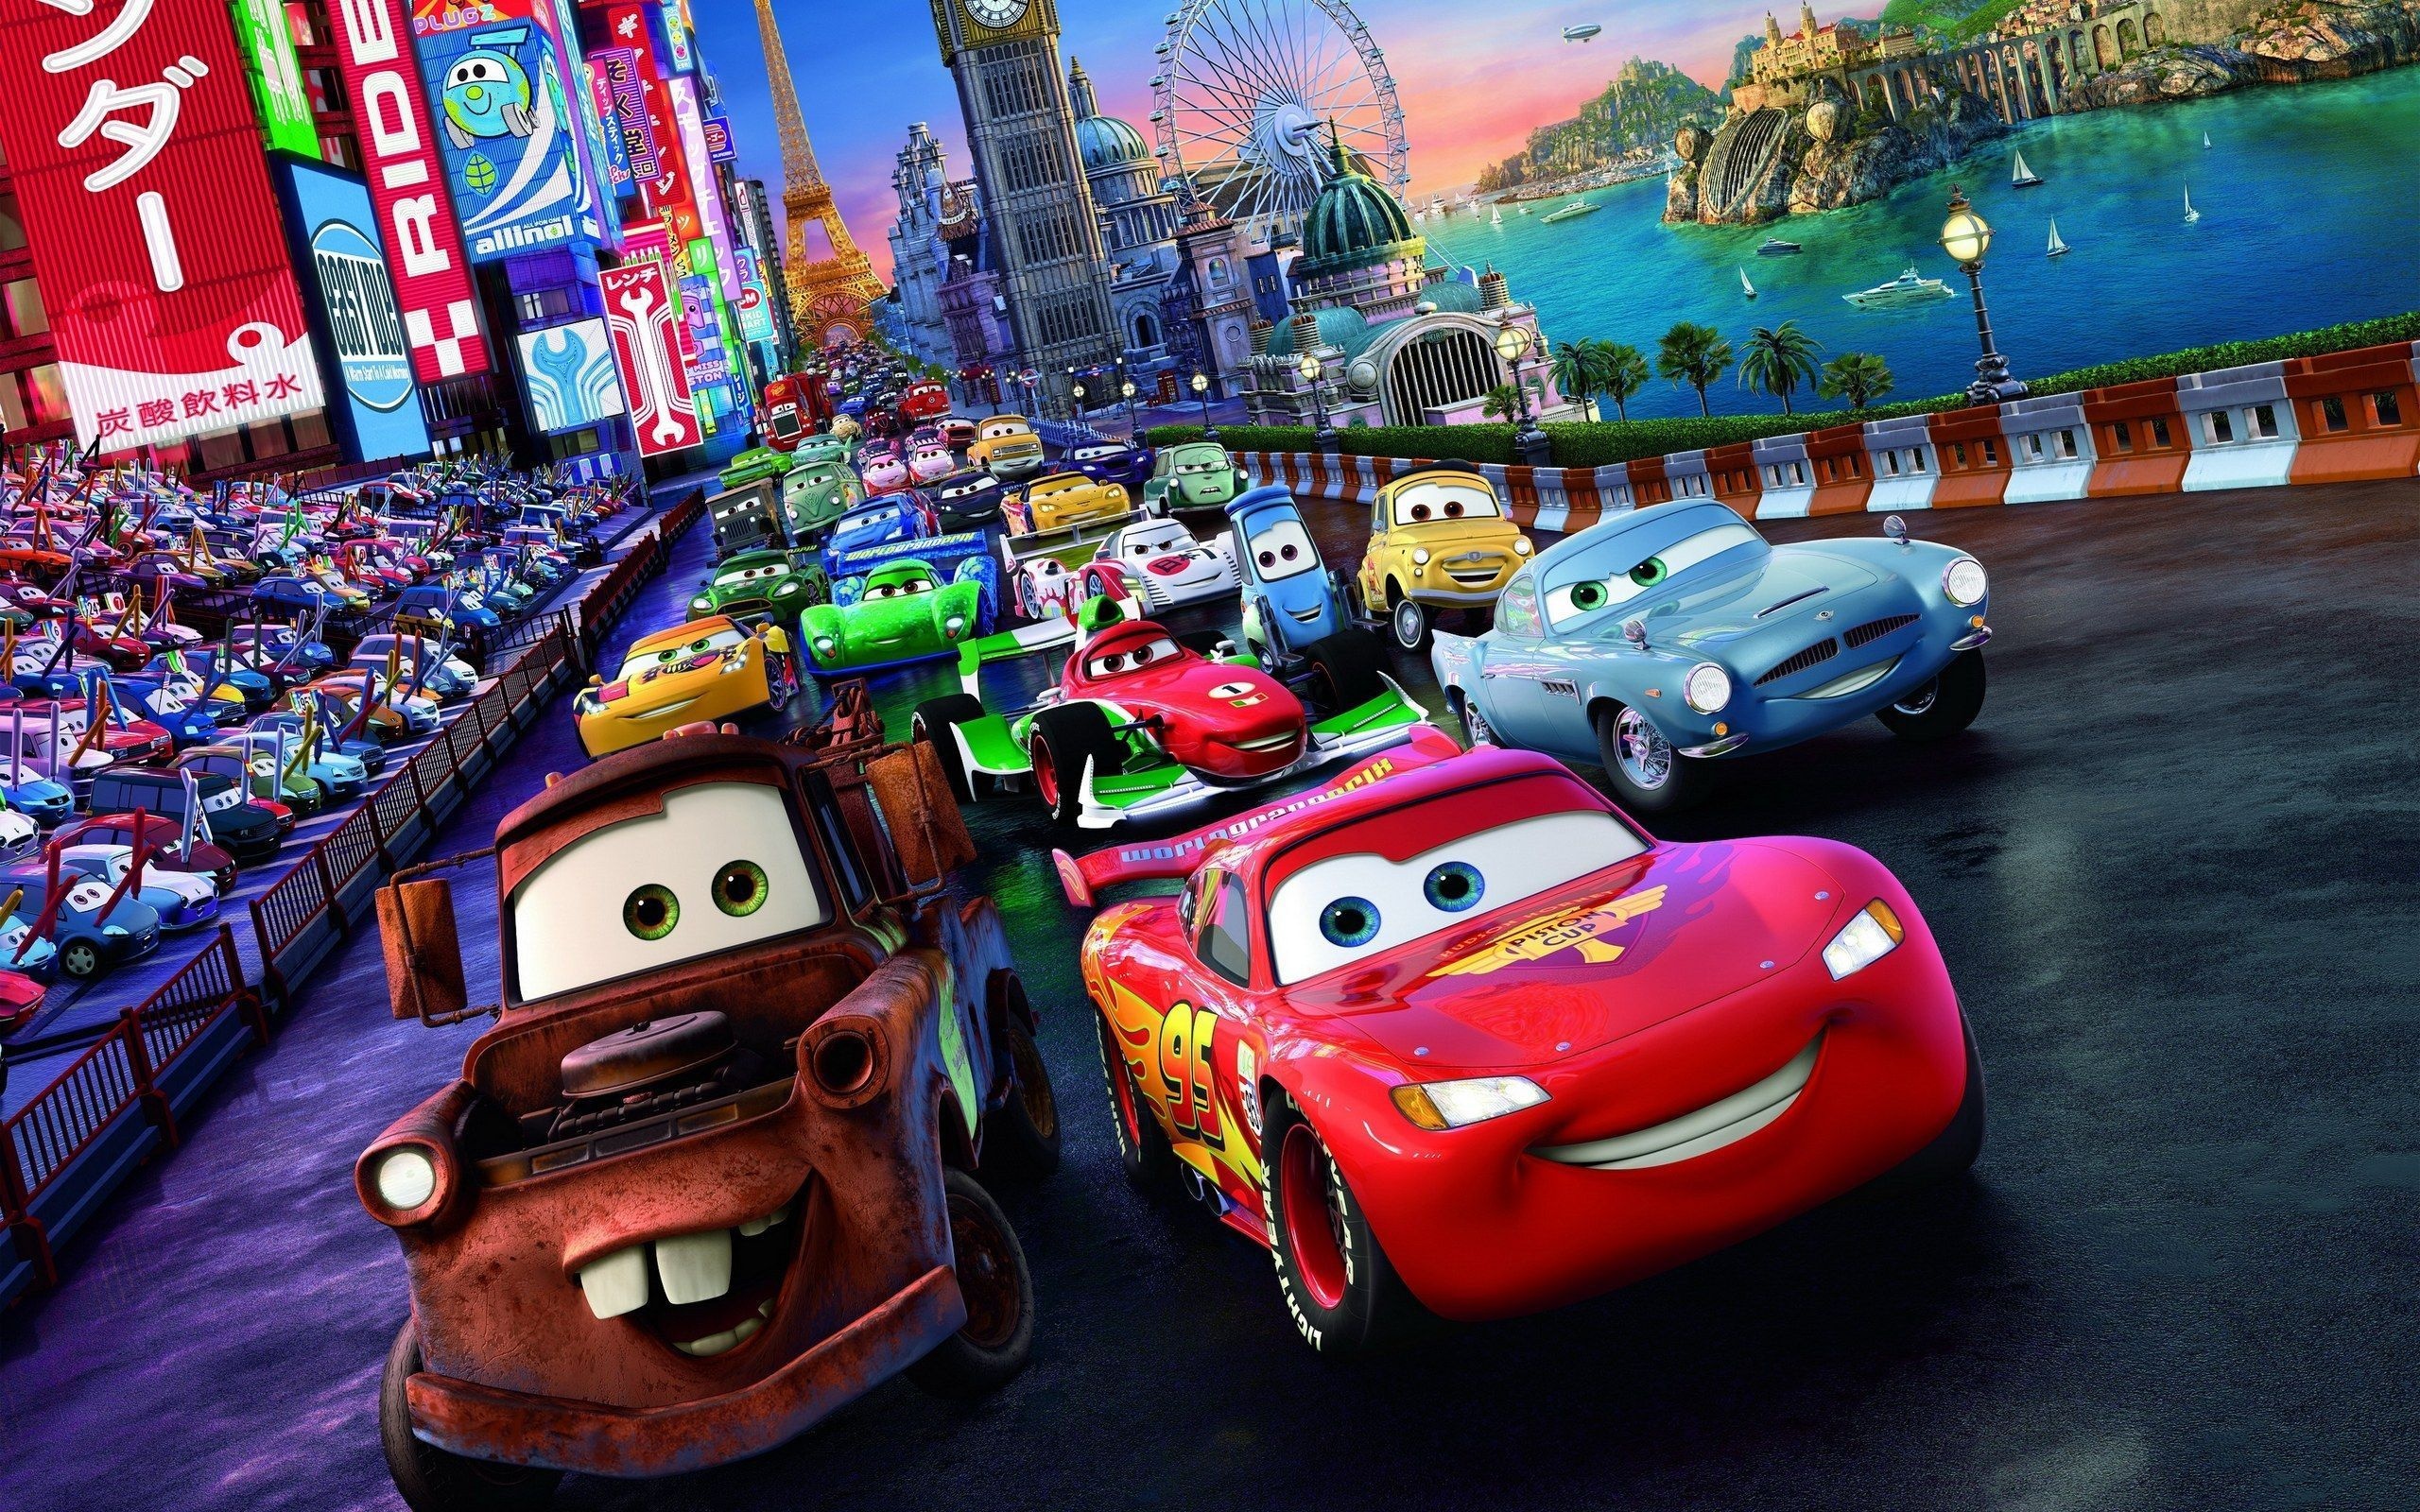 McQueen, Pixar animated movies, Lightning McQueen, Disney Cars, 2560x1600 HD Desktop